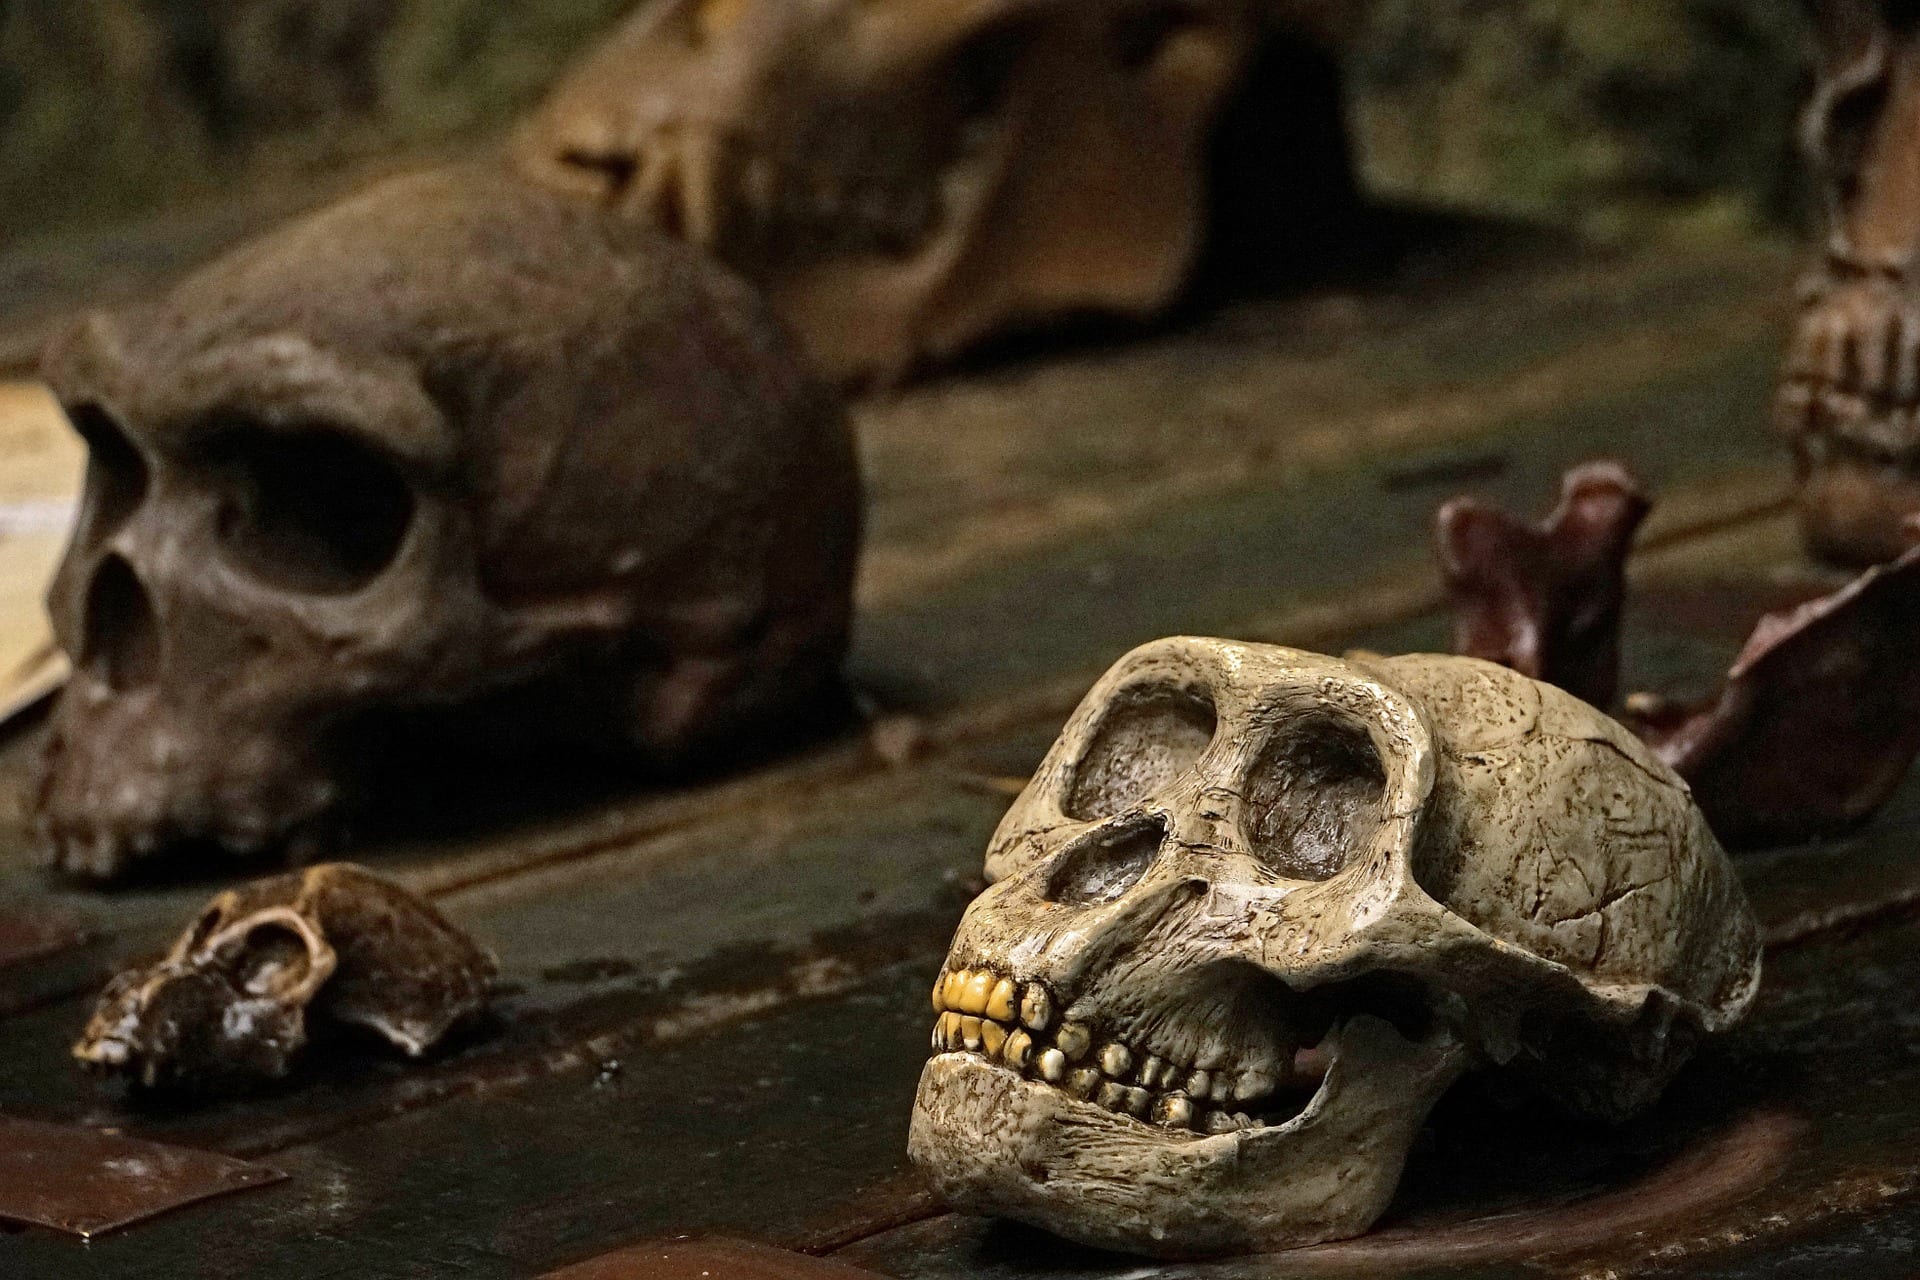 L'origine dell'infanzia umana nei crani fossili